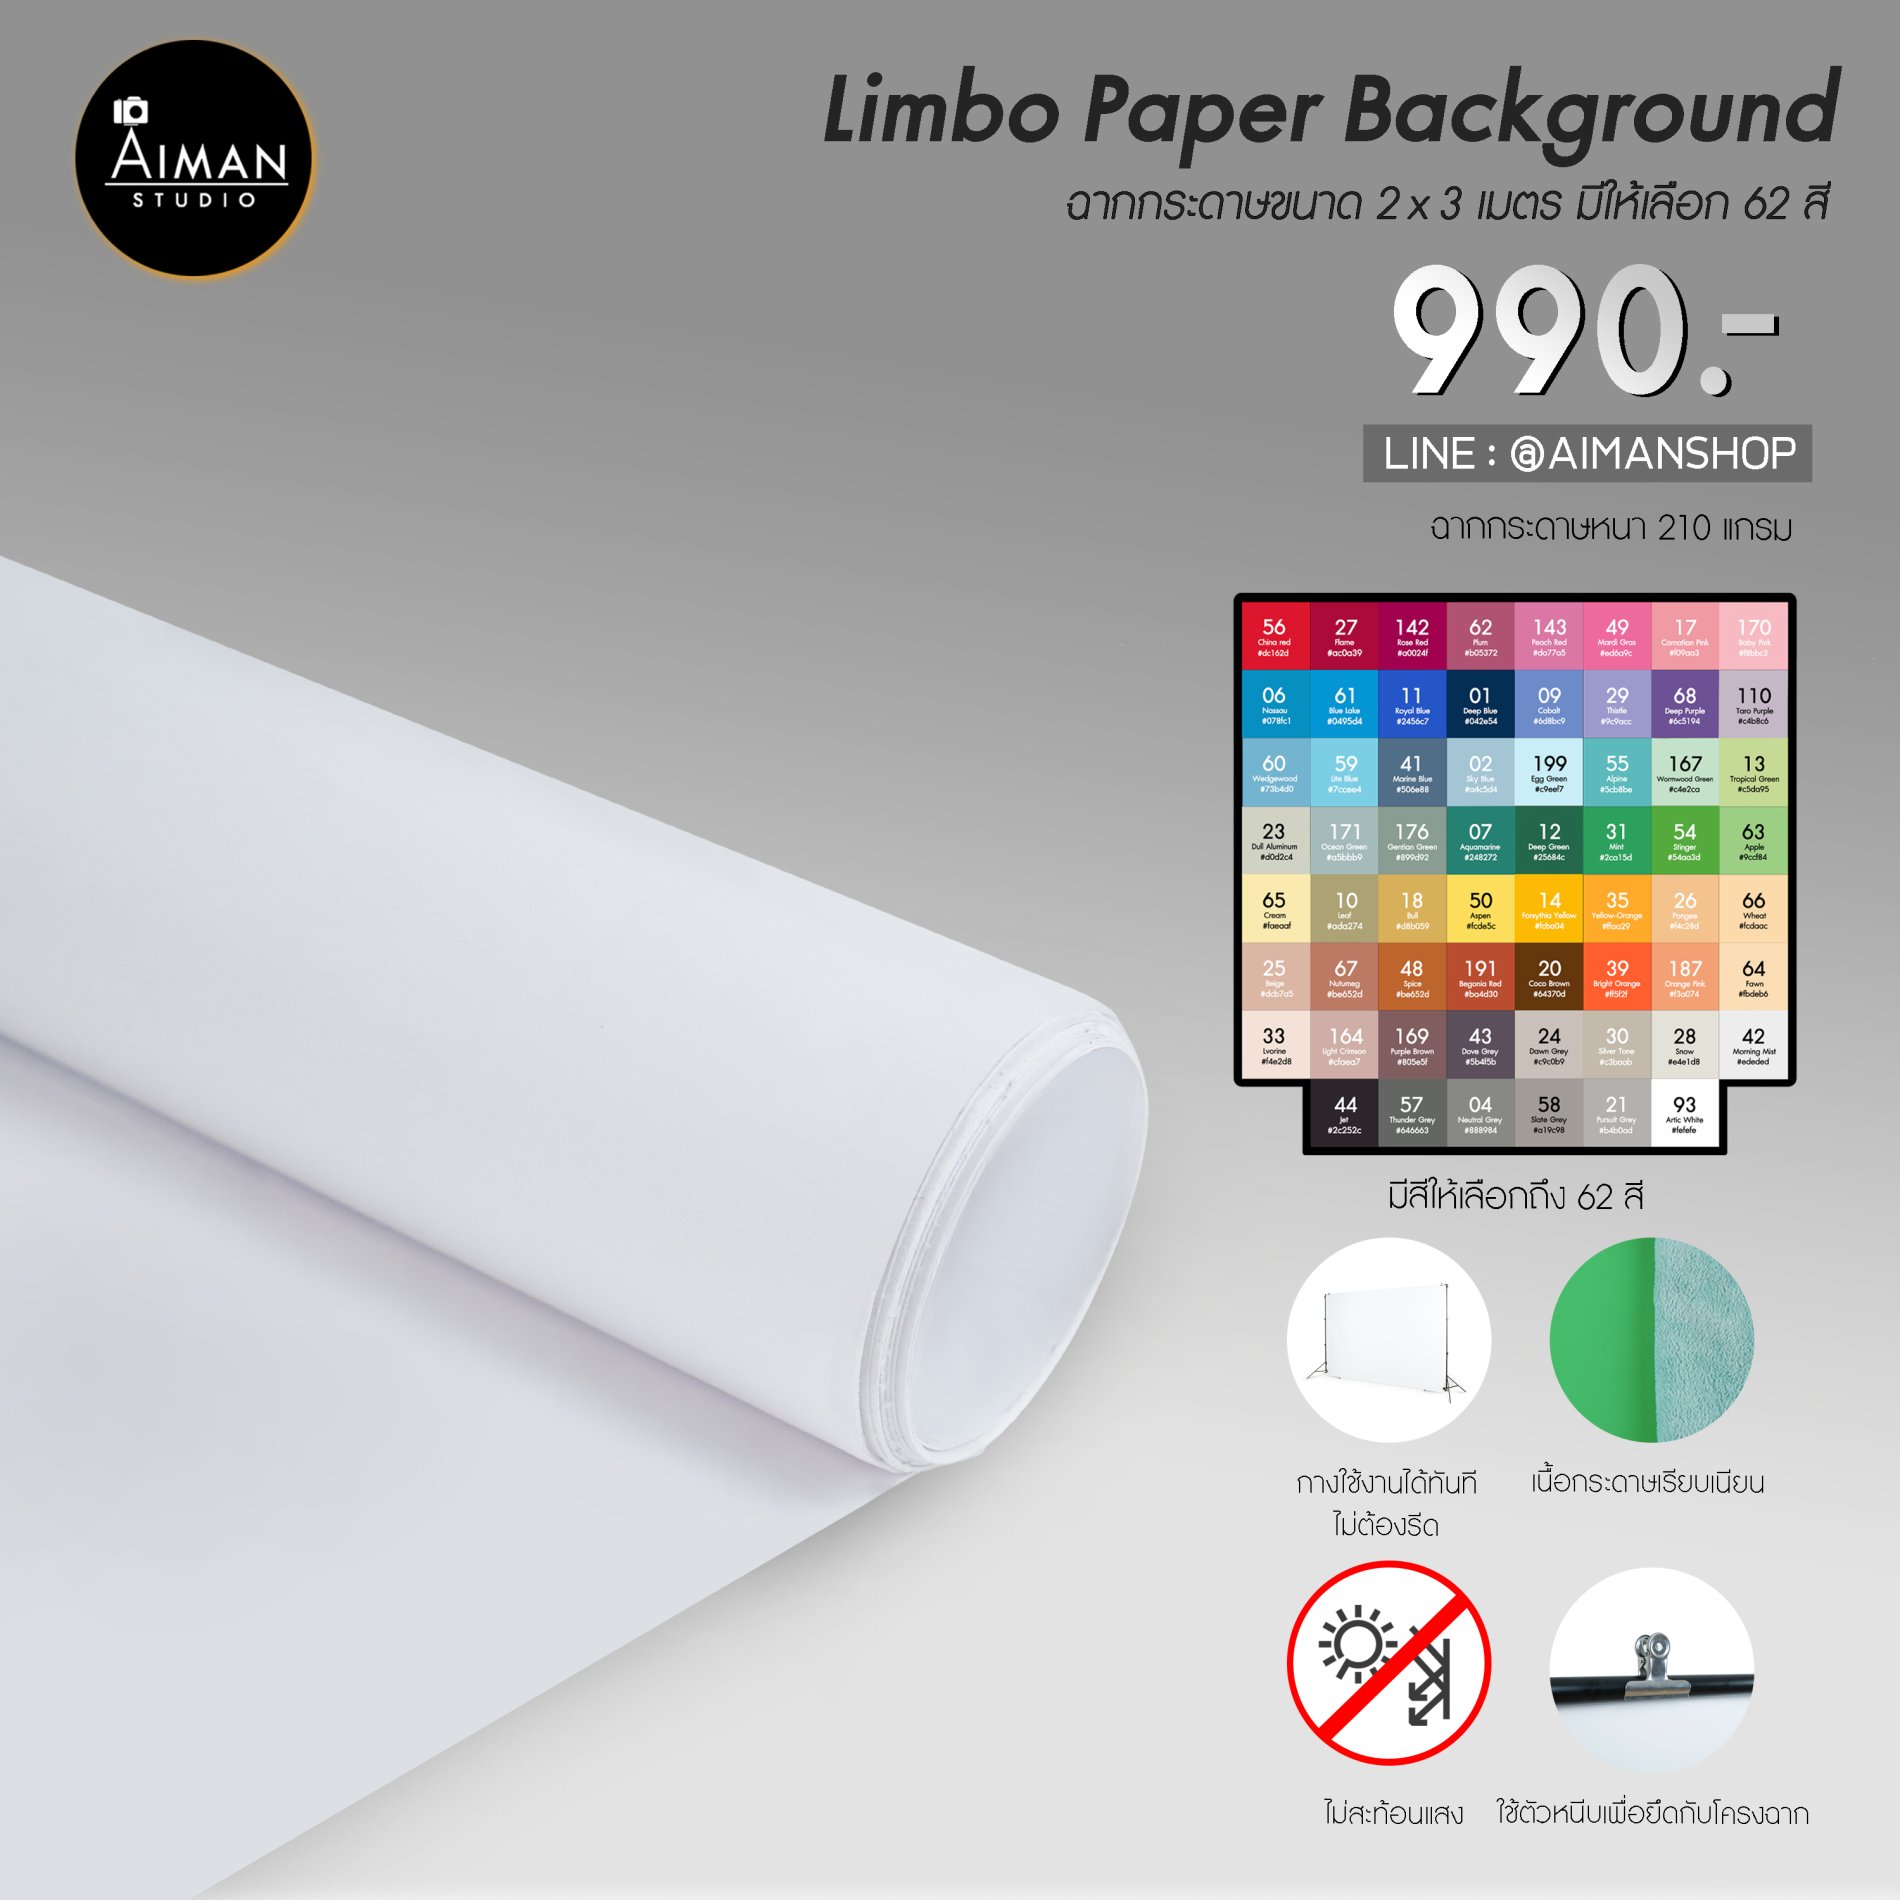 ฉากกระดาษ Limbo ขนาด 2 x 3 เมตร